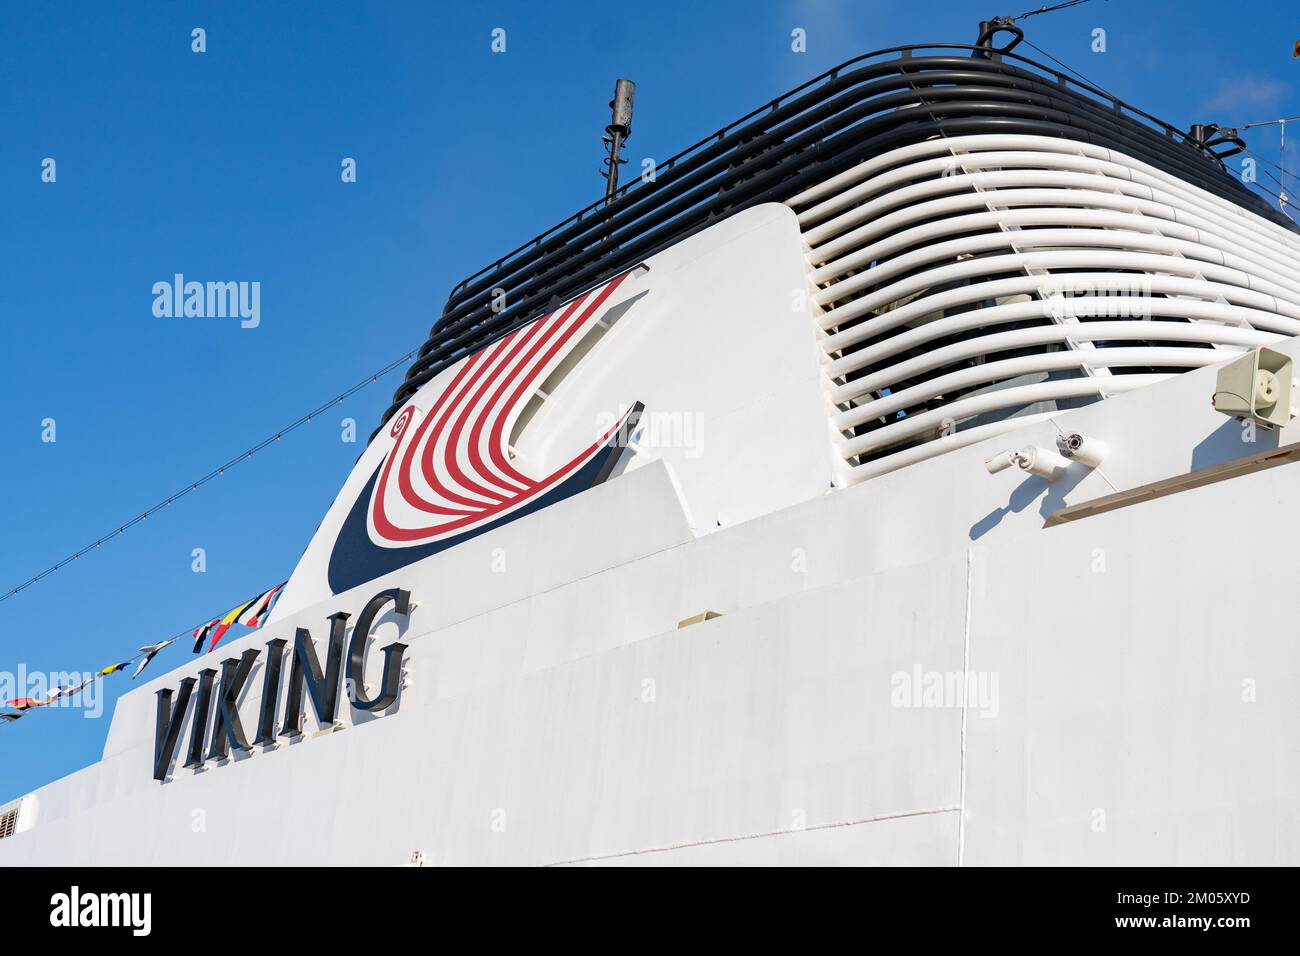 Le viking venus est un petit navire de mer avec des ports d'escale de classe mondiale Banque D'Images